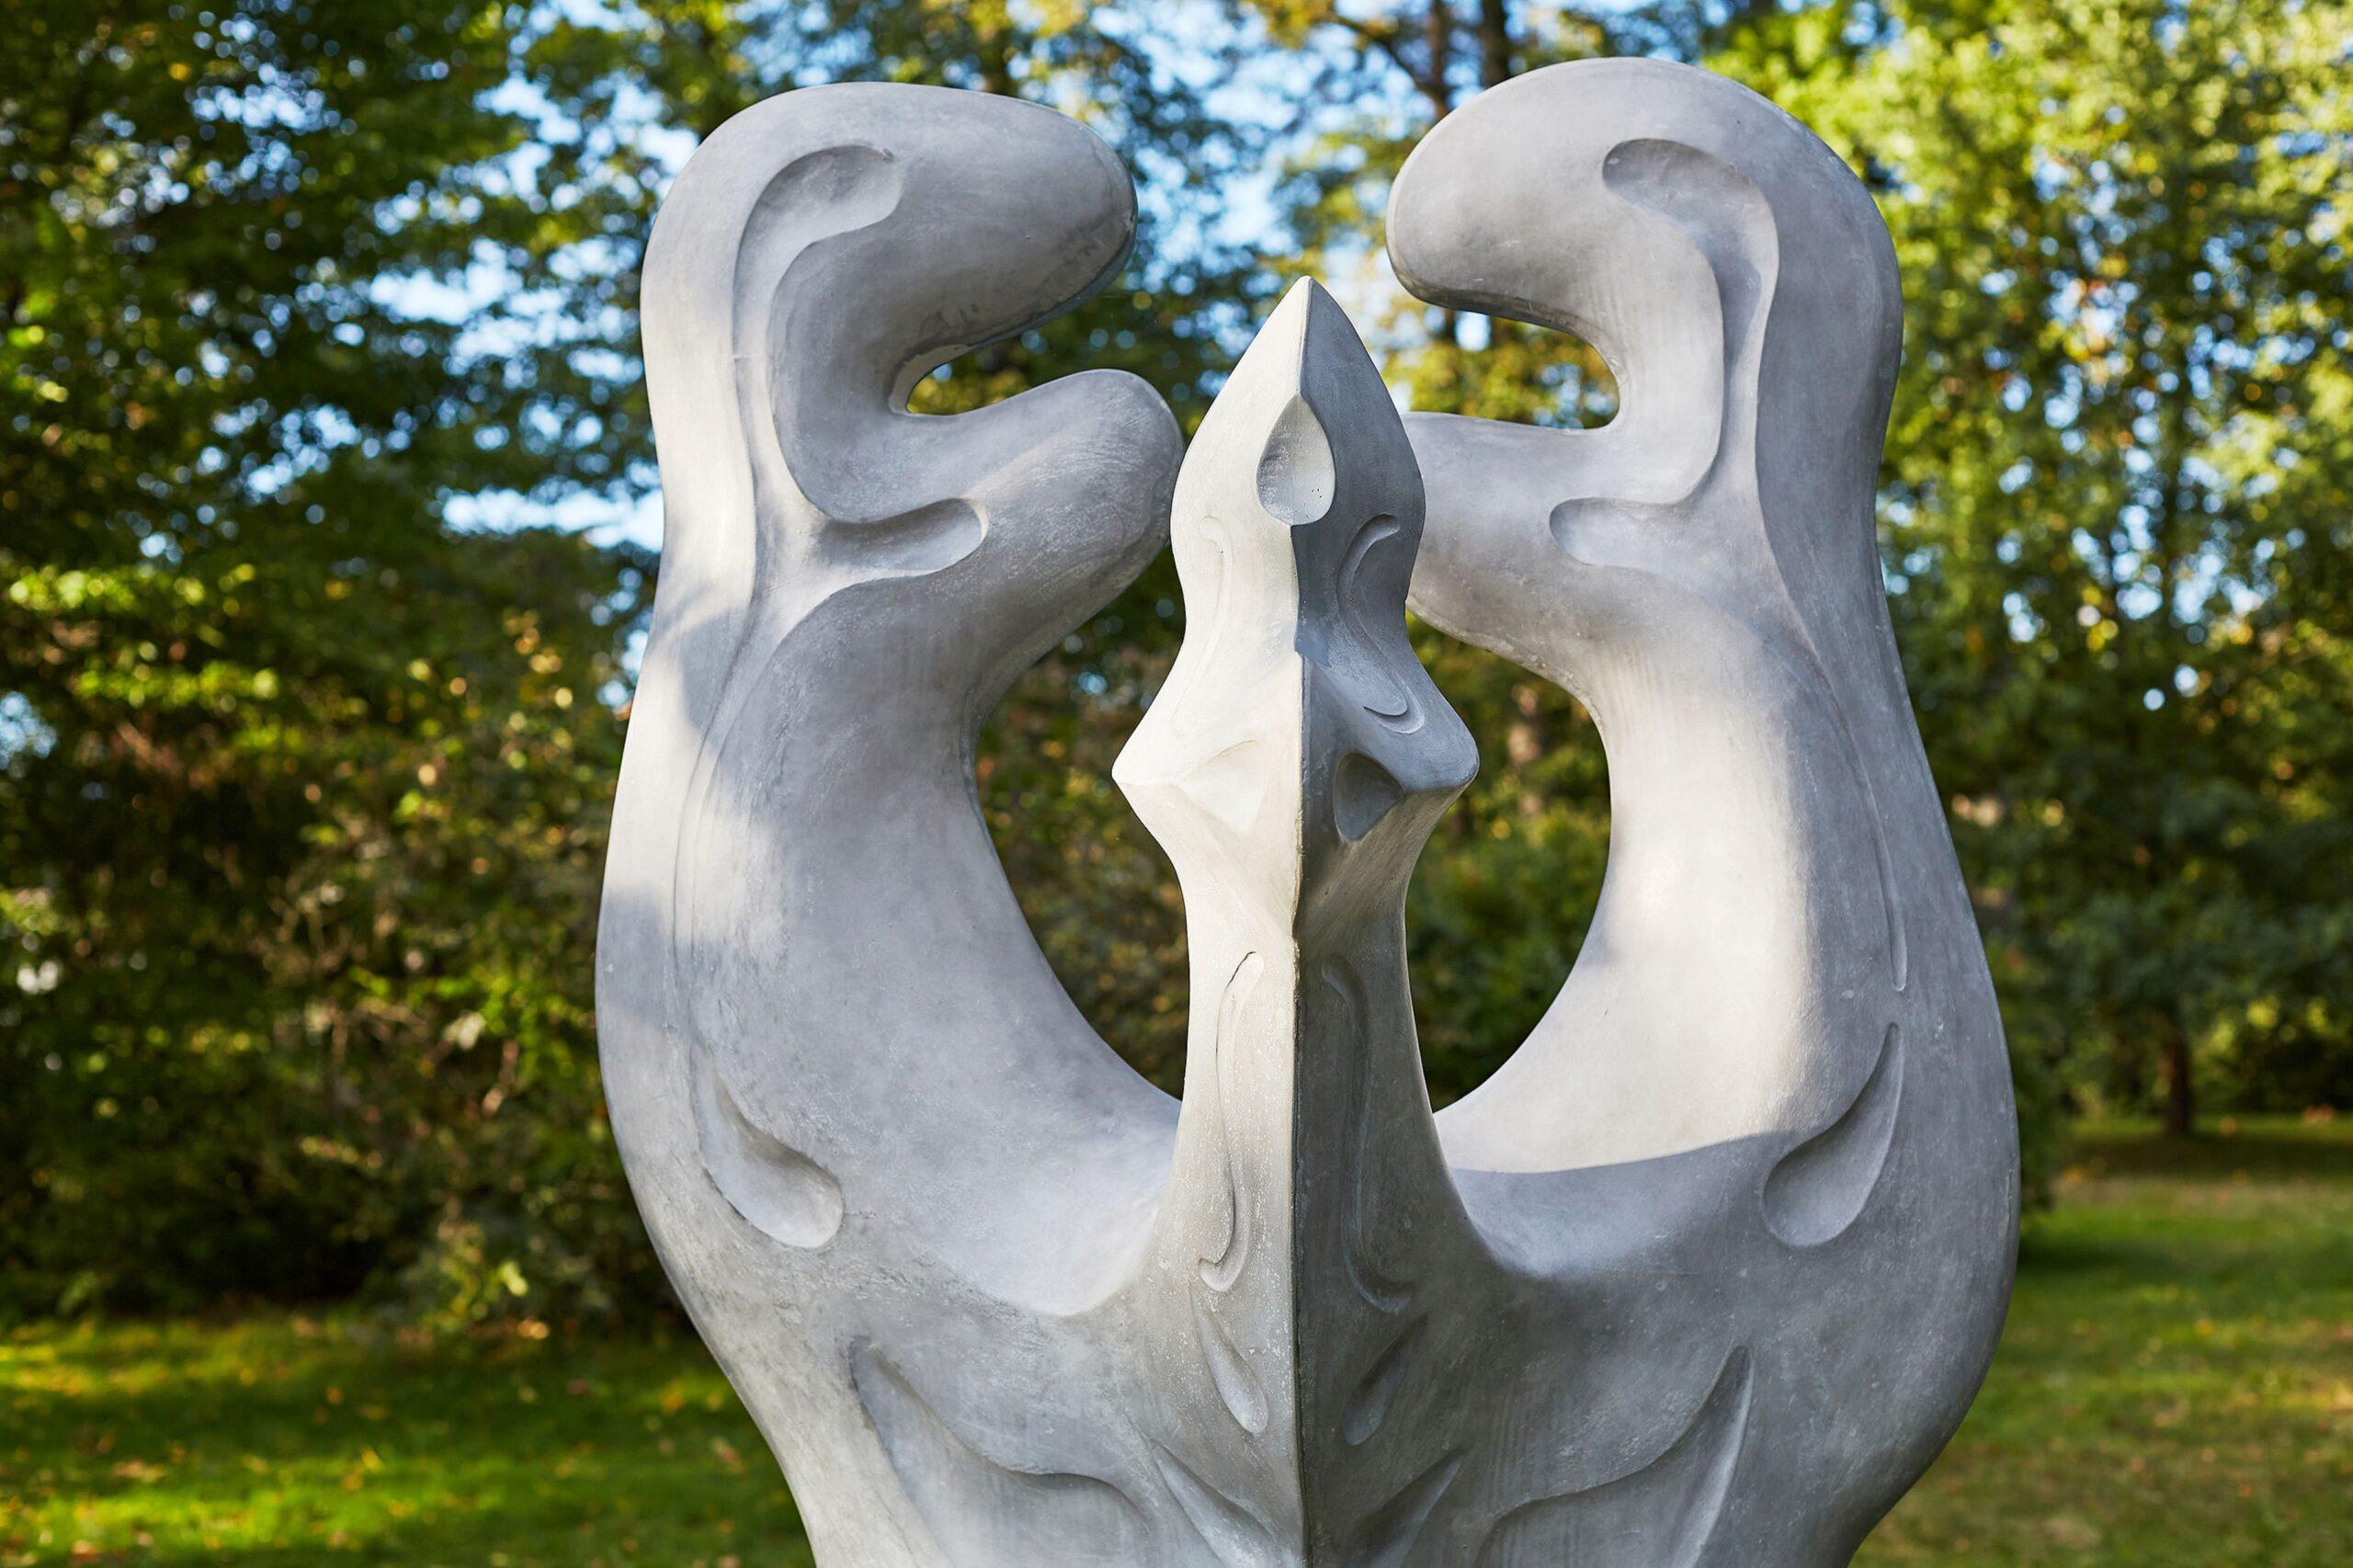 Big Creature by Pavlína Kvita - Contemporary sculpture, futuristic figure, grey For Sale 9